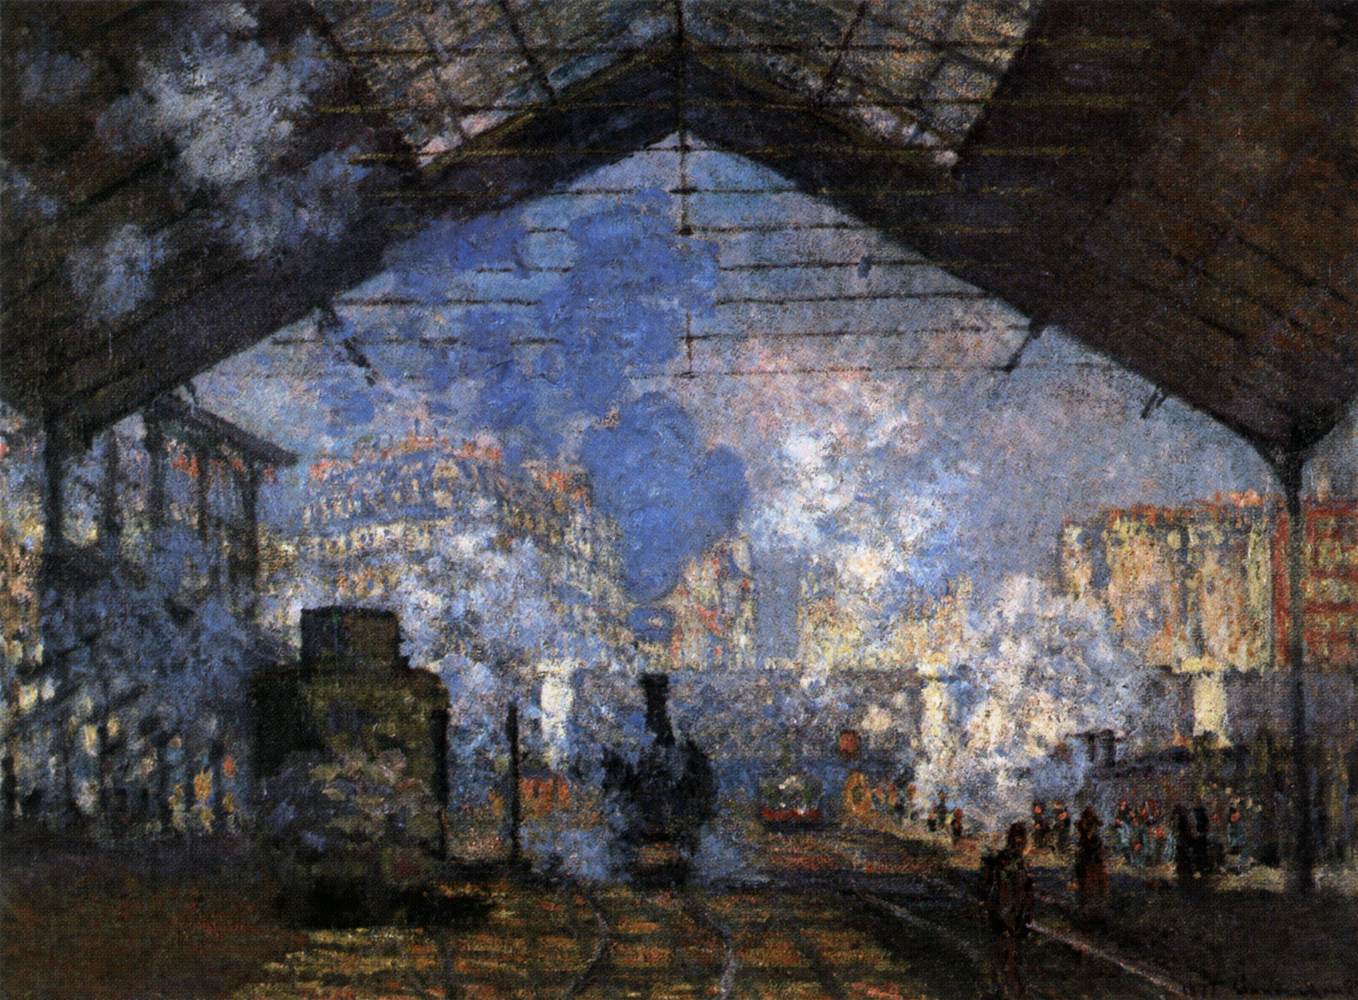 Gare Saint-Lazare by Claude Monet - 1877 - 76 x 104 cm Musée d'Orsay